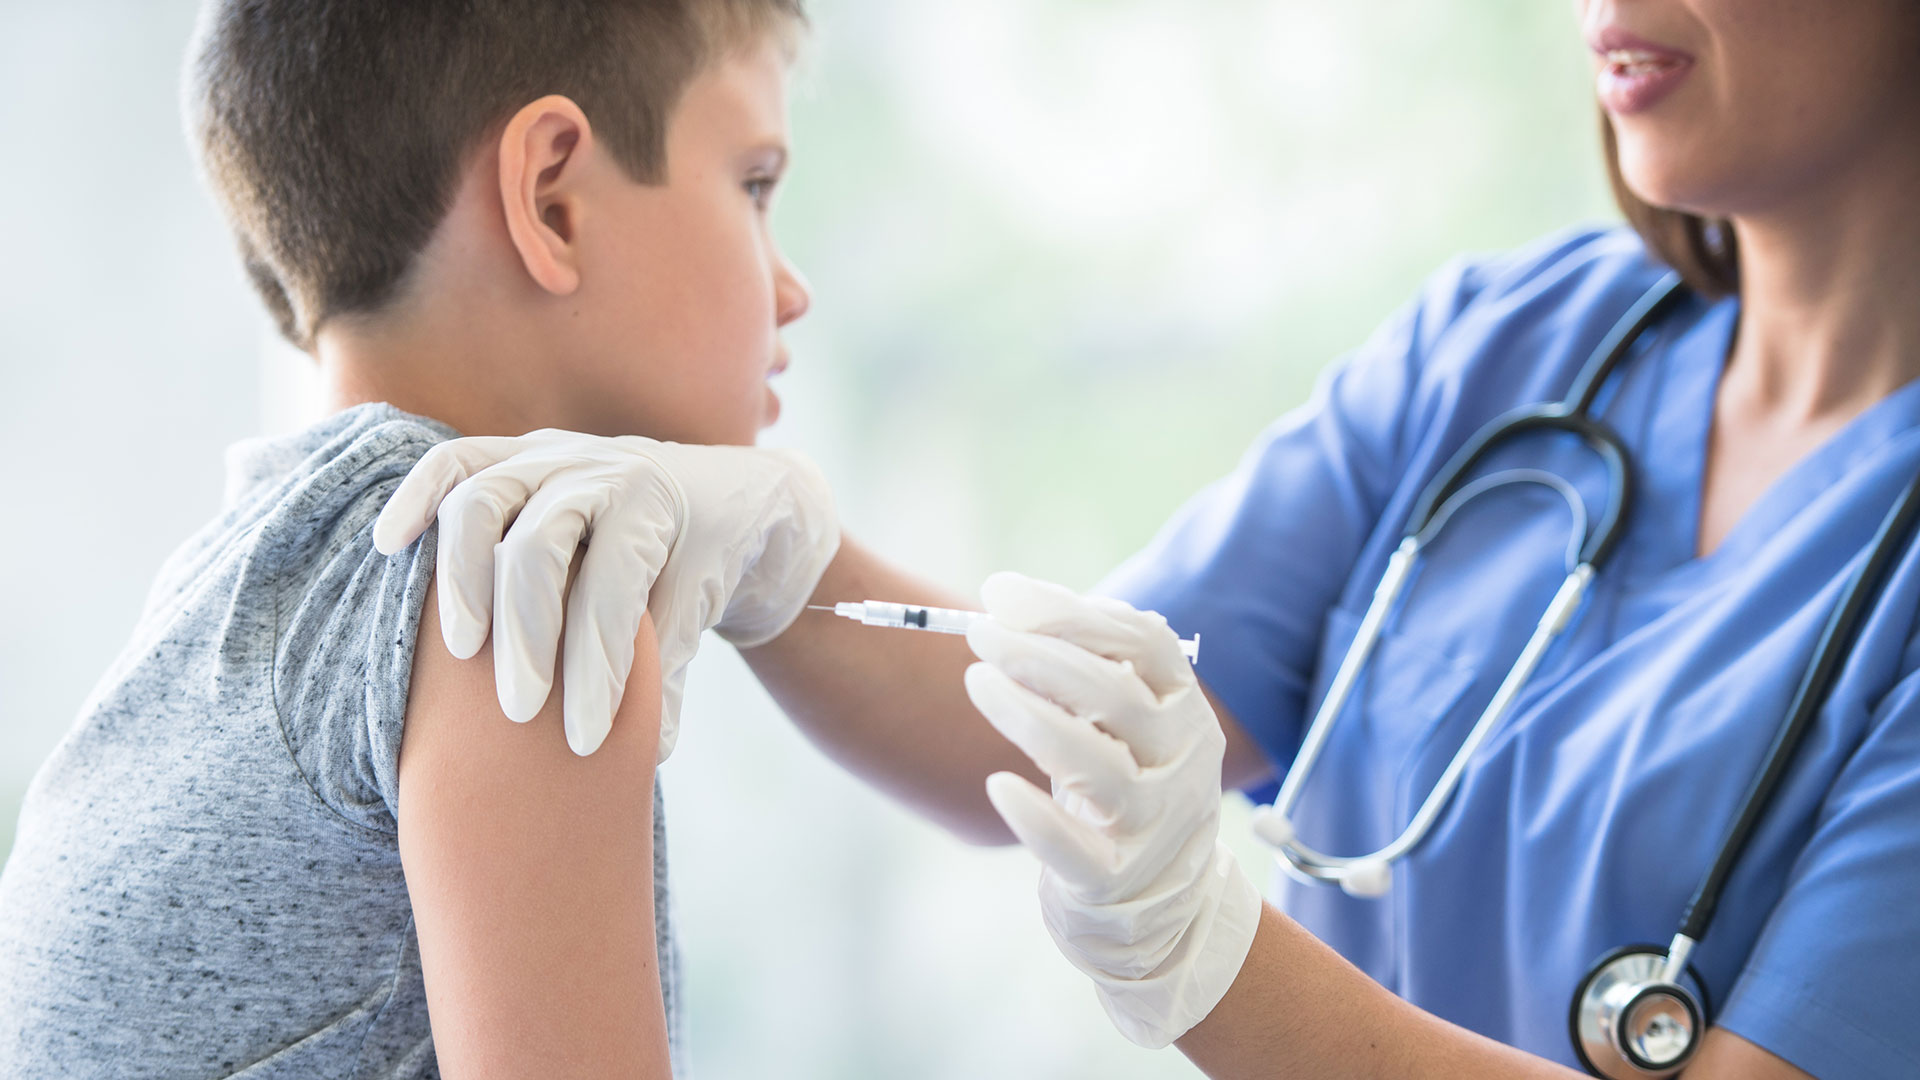 No hay evidencia de ningún vinculo entre ninguna vacuna y el desarrollo de autismo o trastornos autistas (Getty Images)